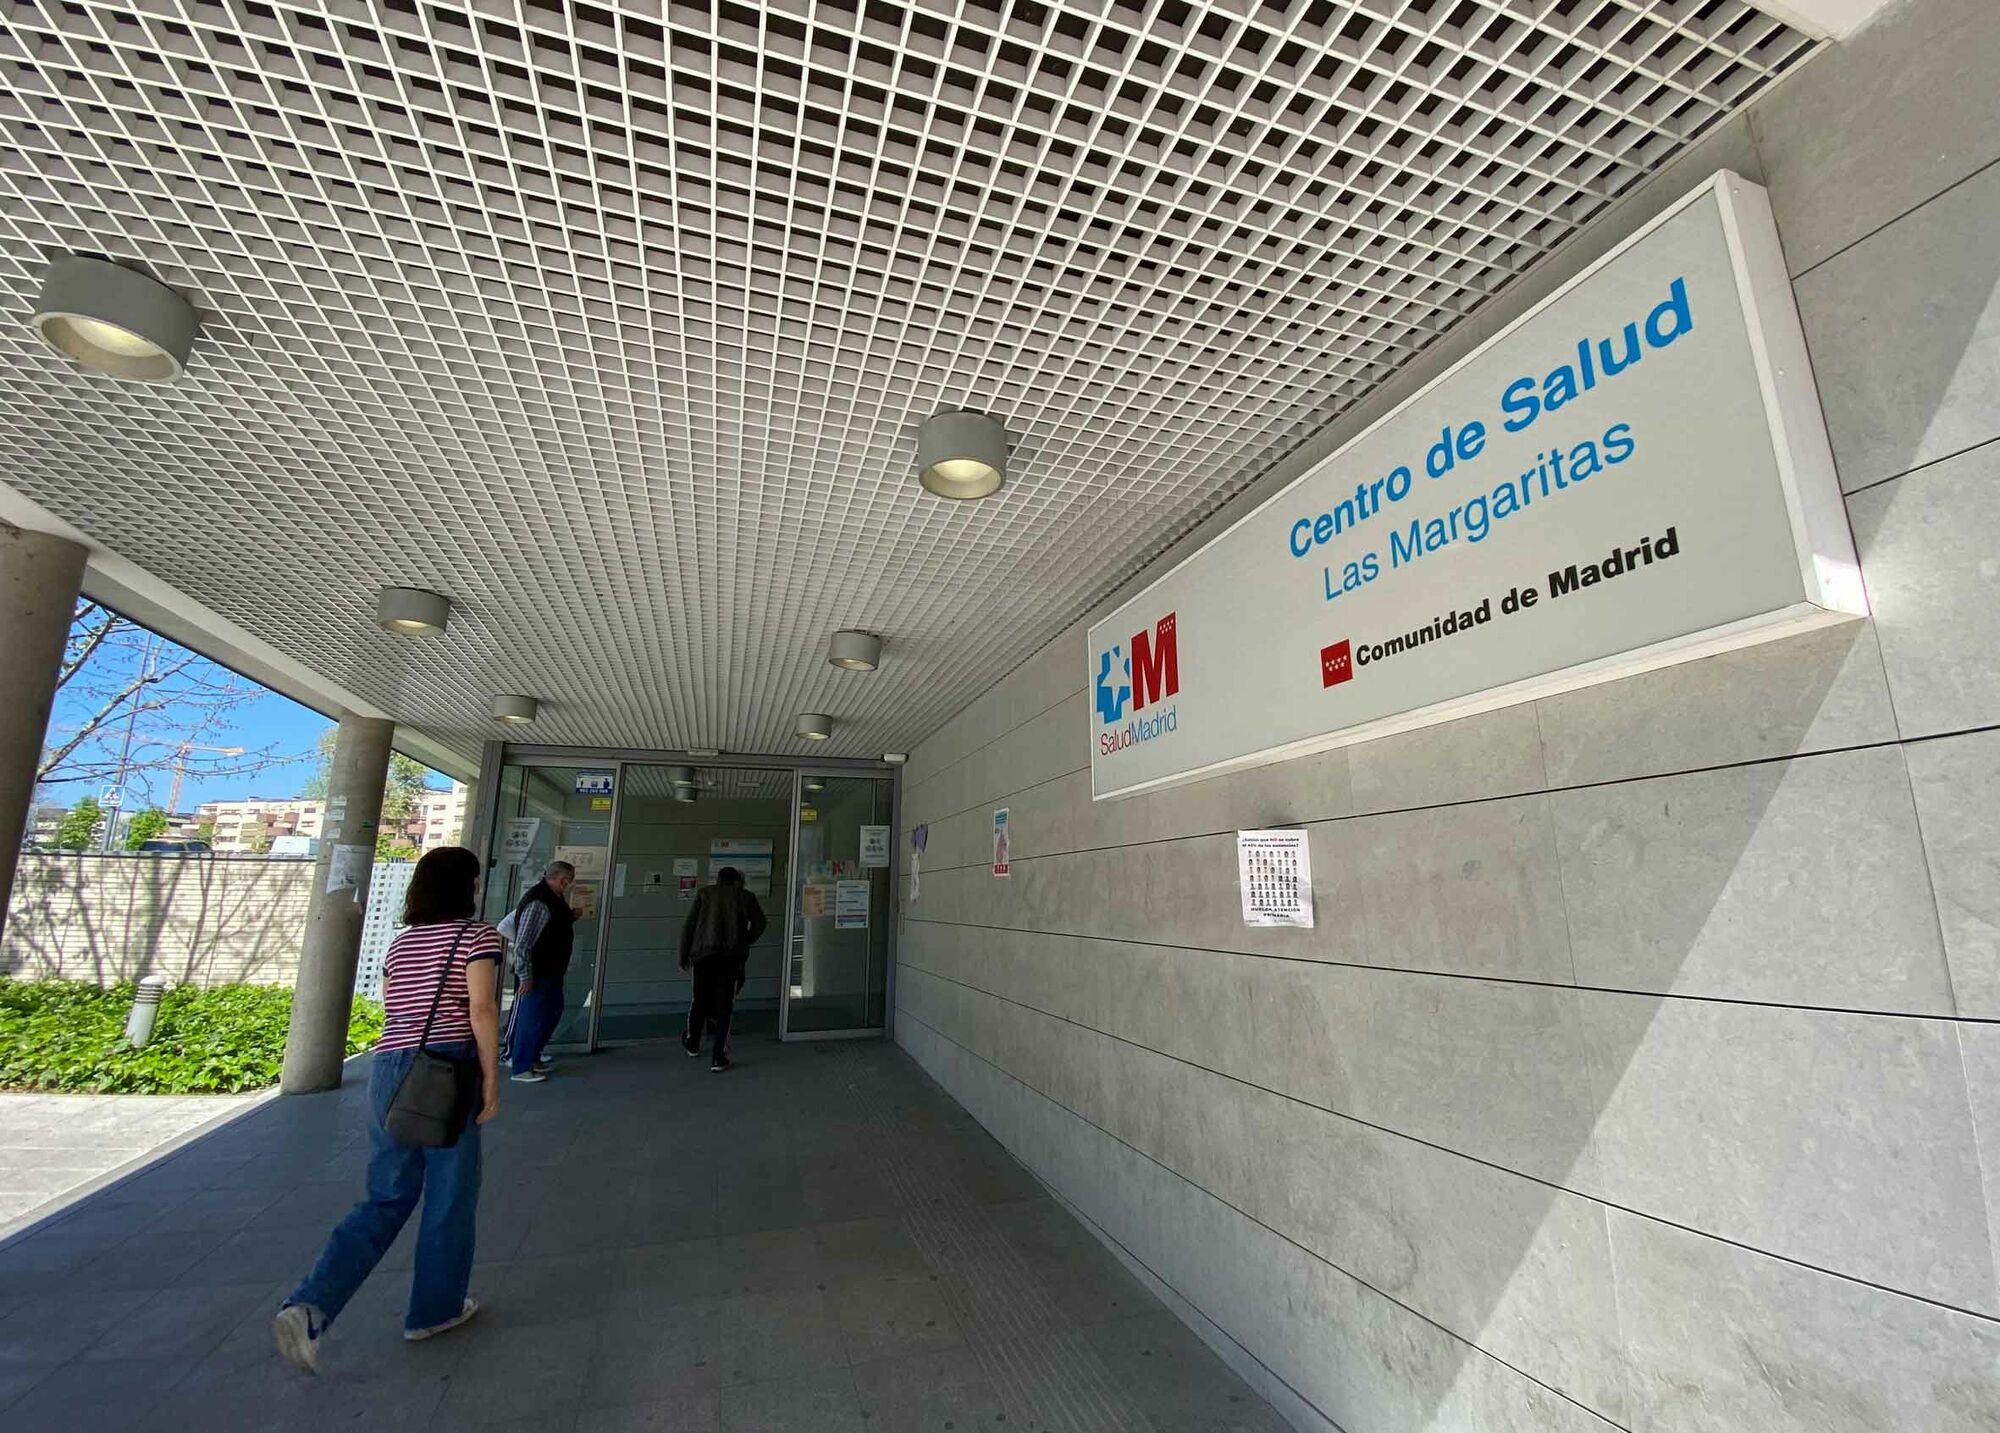 Das Foto zeigt den Eingange eines Gesundheitszentrums – spanisch: Centro de Salud – in Getafe, einer Vorstadt von Madrid.